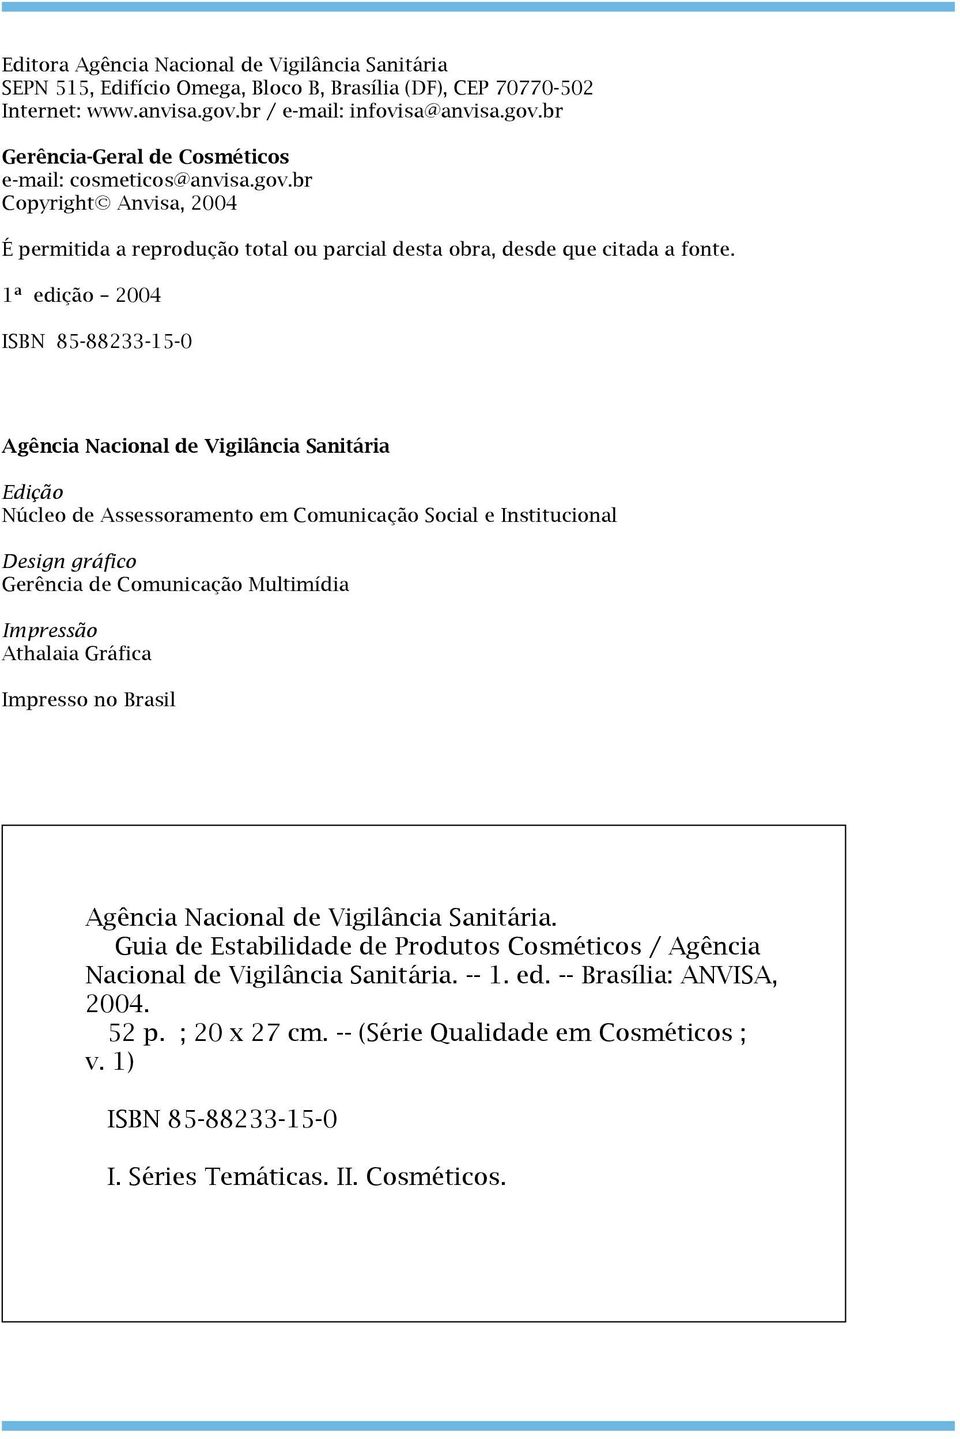 1ª edição 2004 ISBN 85-88233-15-0 Agência Nacional de Vigilância Sanitária Edição Núcleo de Assessoramento em Comunicação Social e Institucional Design gráfico Gerência de Comunicação Multimídia